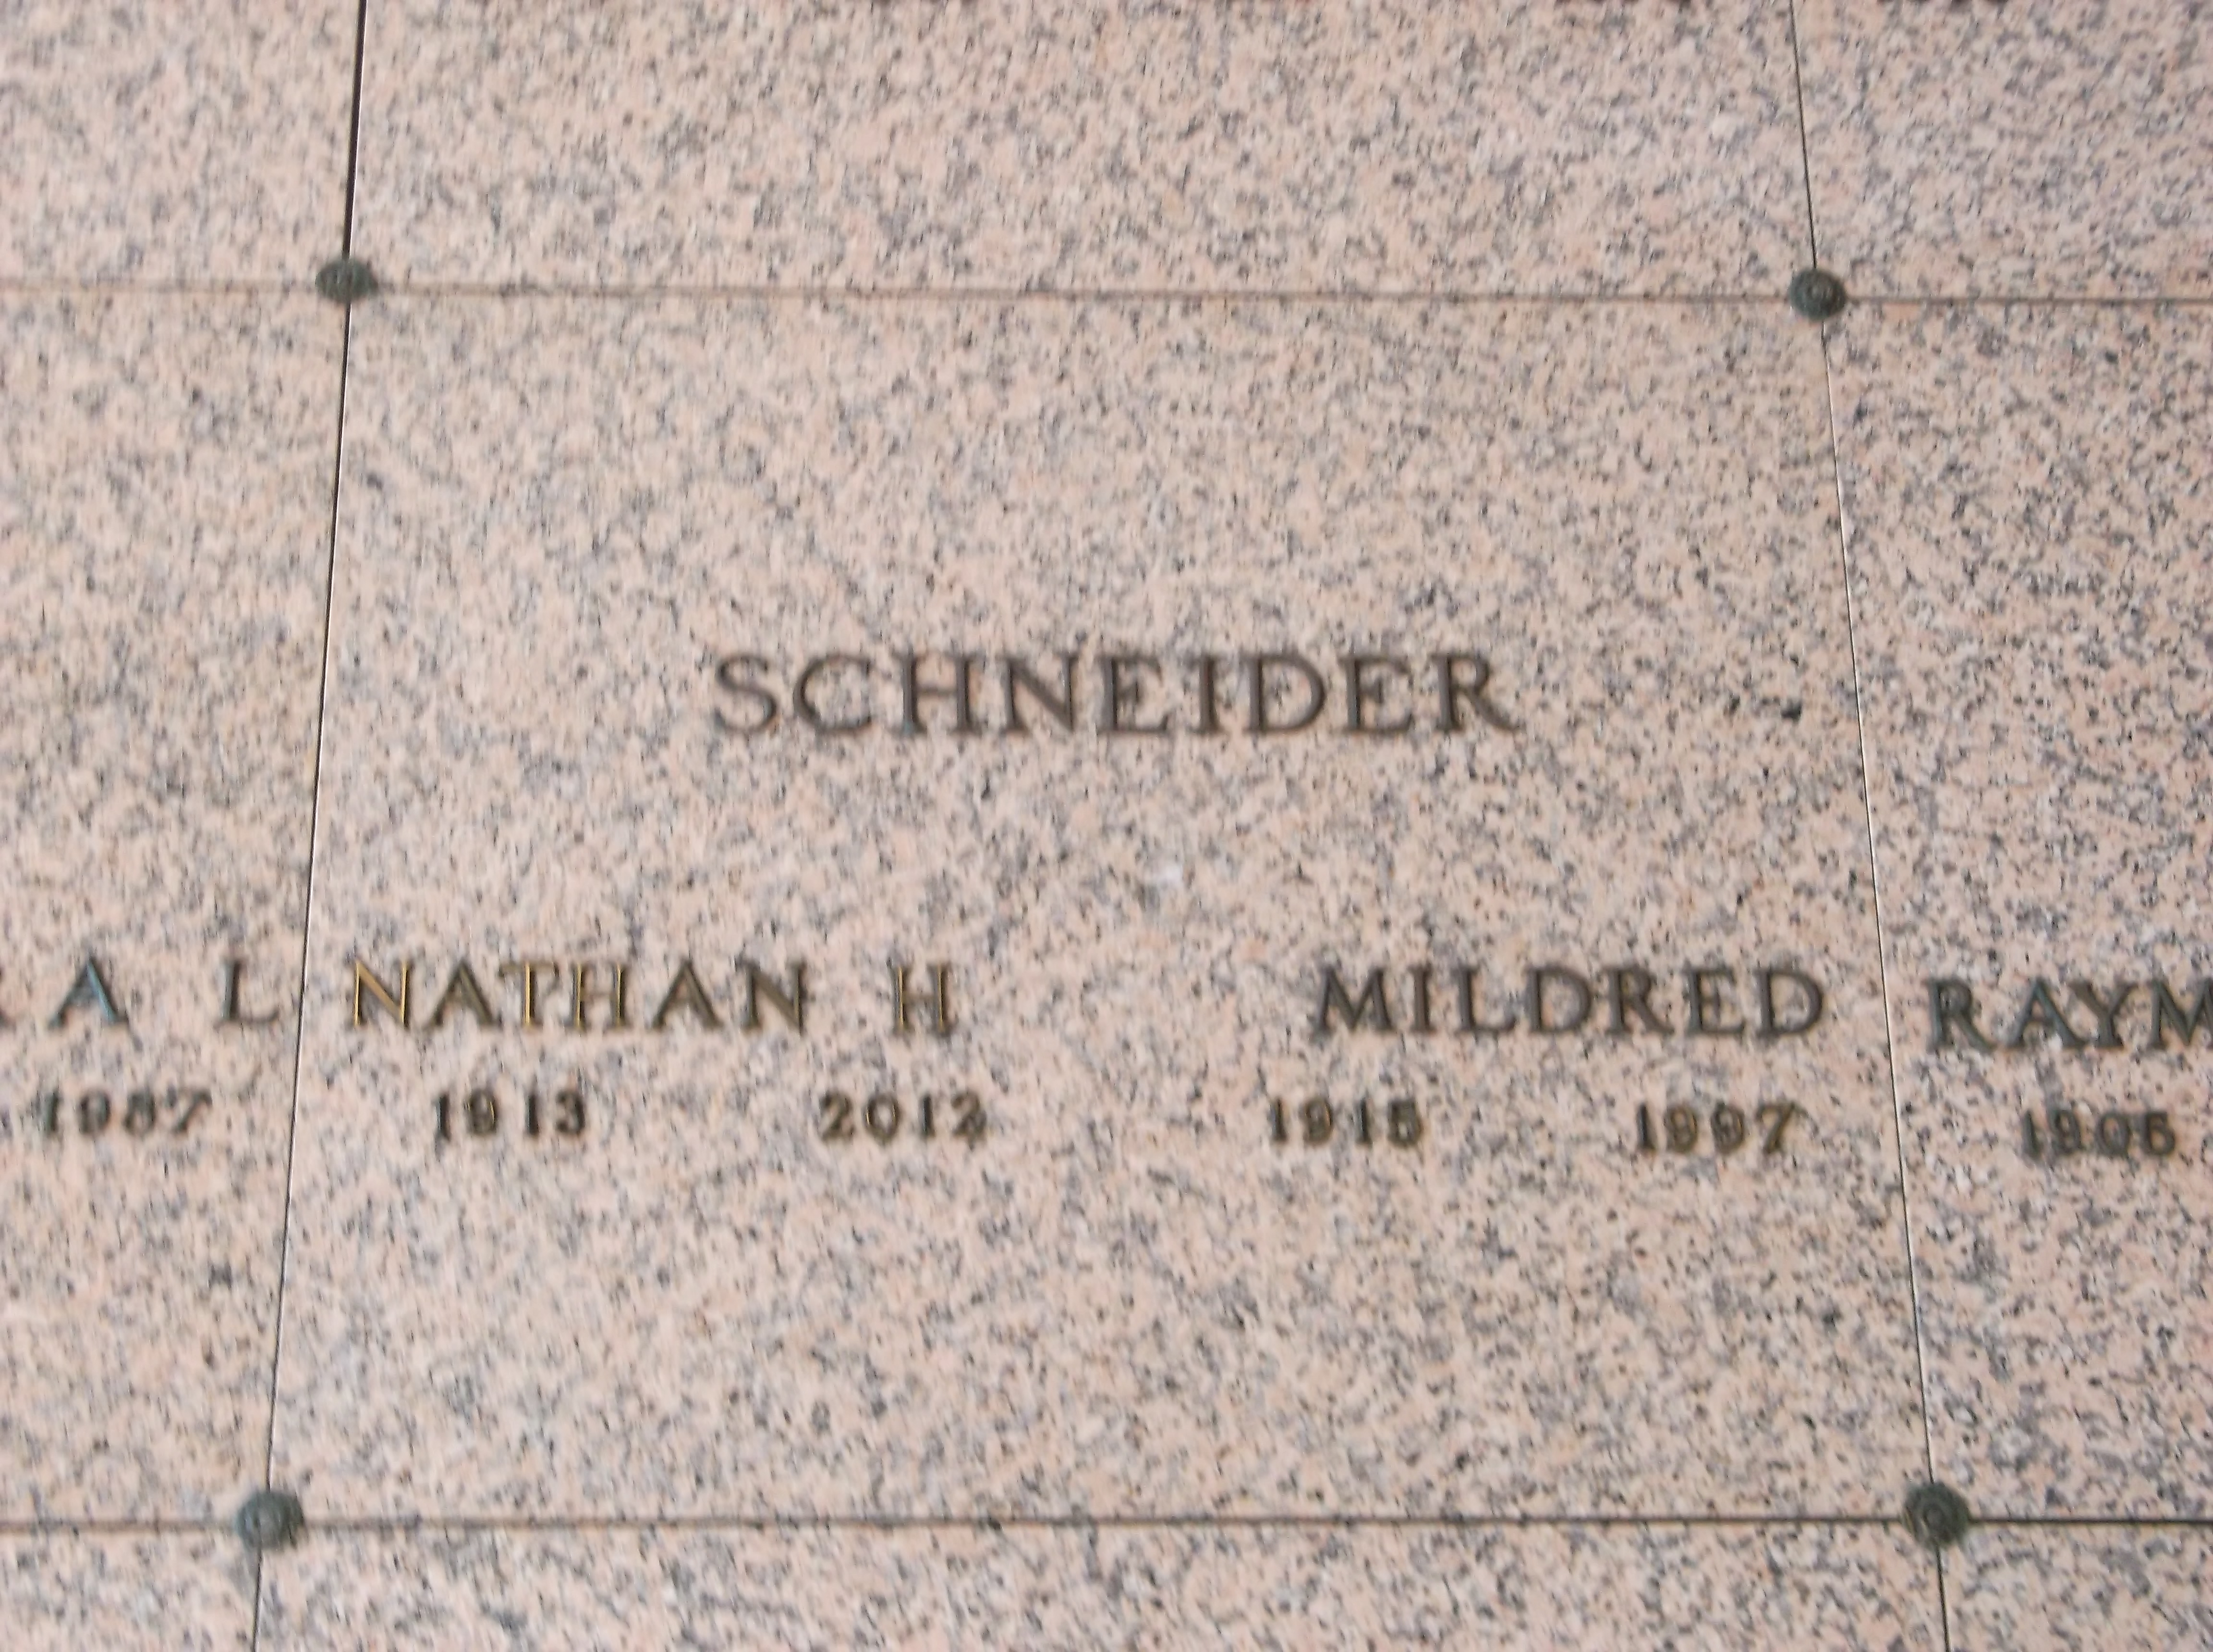 Nathan H Schneider